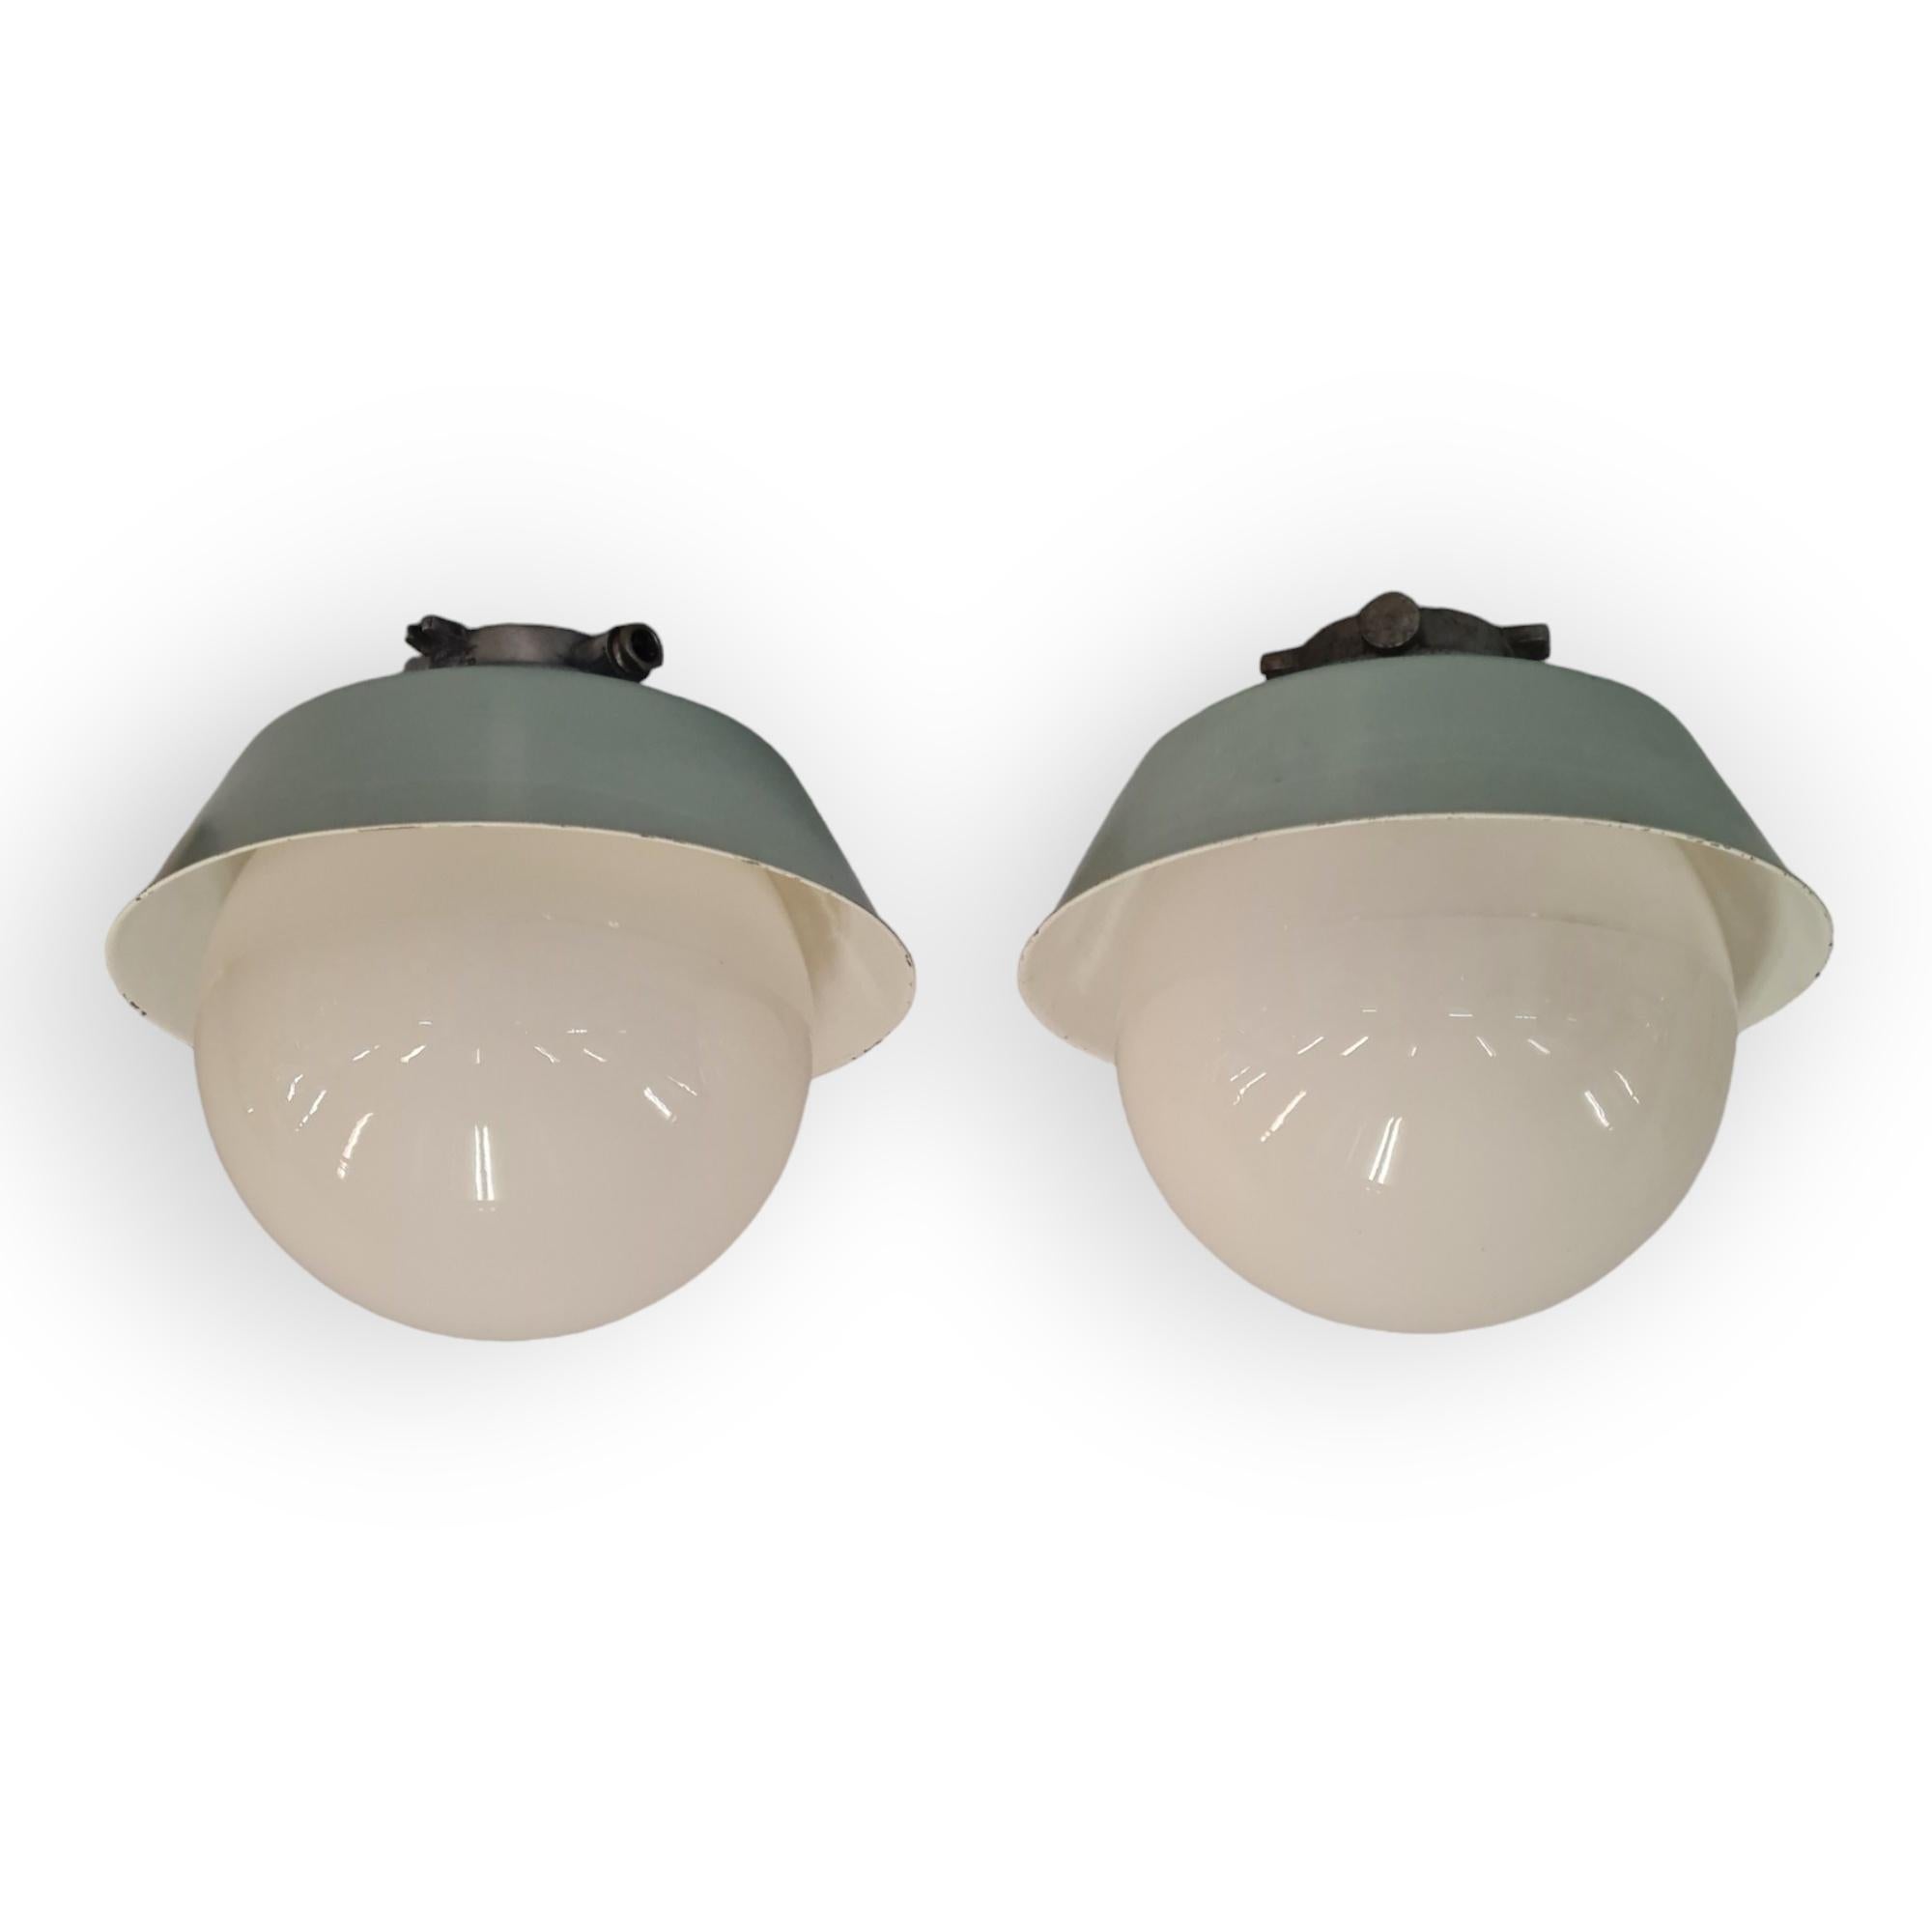 Ein Paar große Paavo Tynell Außen- und Innenlampen im industriellen Stil. Diese Lampen Modell 2421-2453 sind recht groß und haben einen großen Opalglas-Kugelschirm, der zum Wechseln der Glühbirne leicht ein- und ausgeschraubt werden kann. Die Lampen